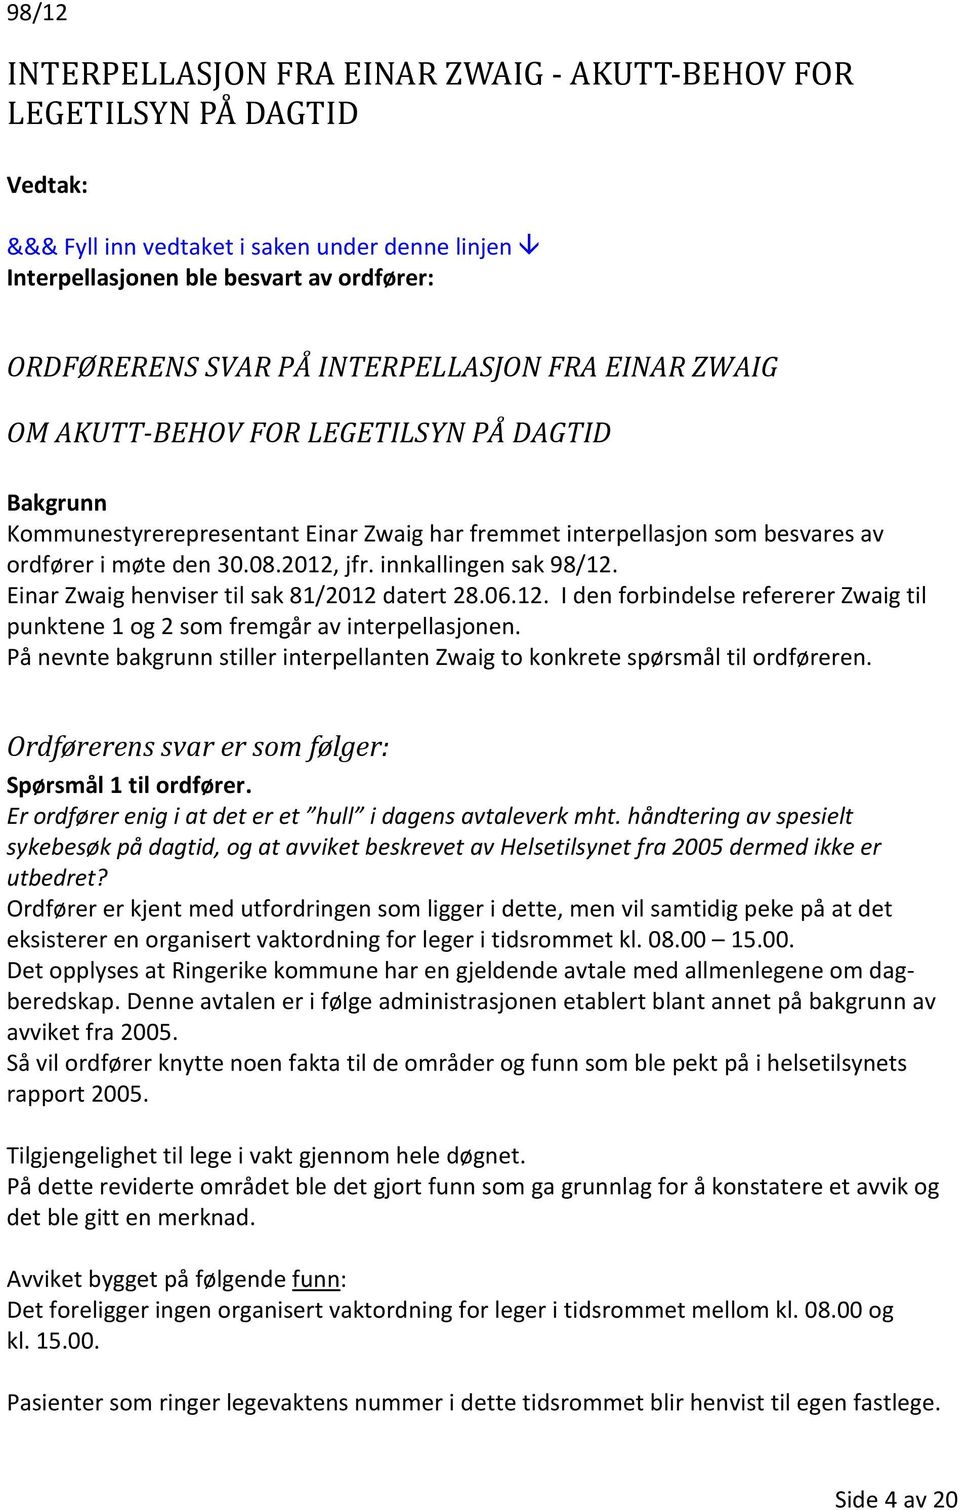 Einar Zwaig henviser til sak 81/2012 datert 28.06.12. I den forbindelse refererer Zwaig til punktene 1 og 2 som fremgår av interpellasjonen.